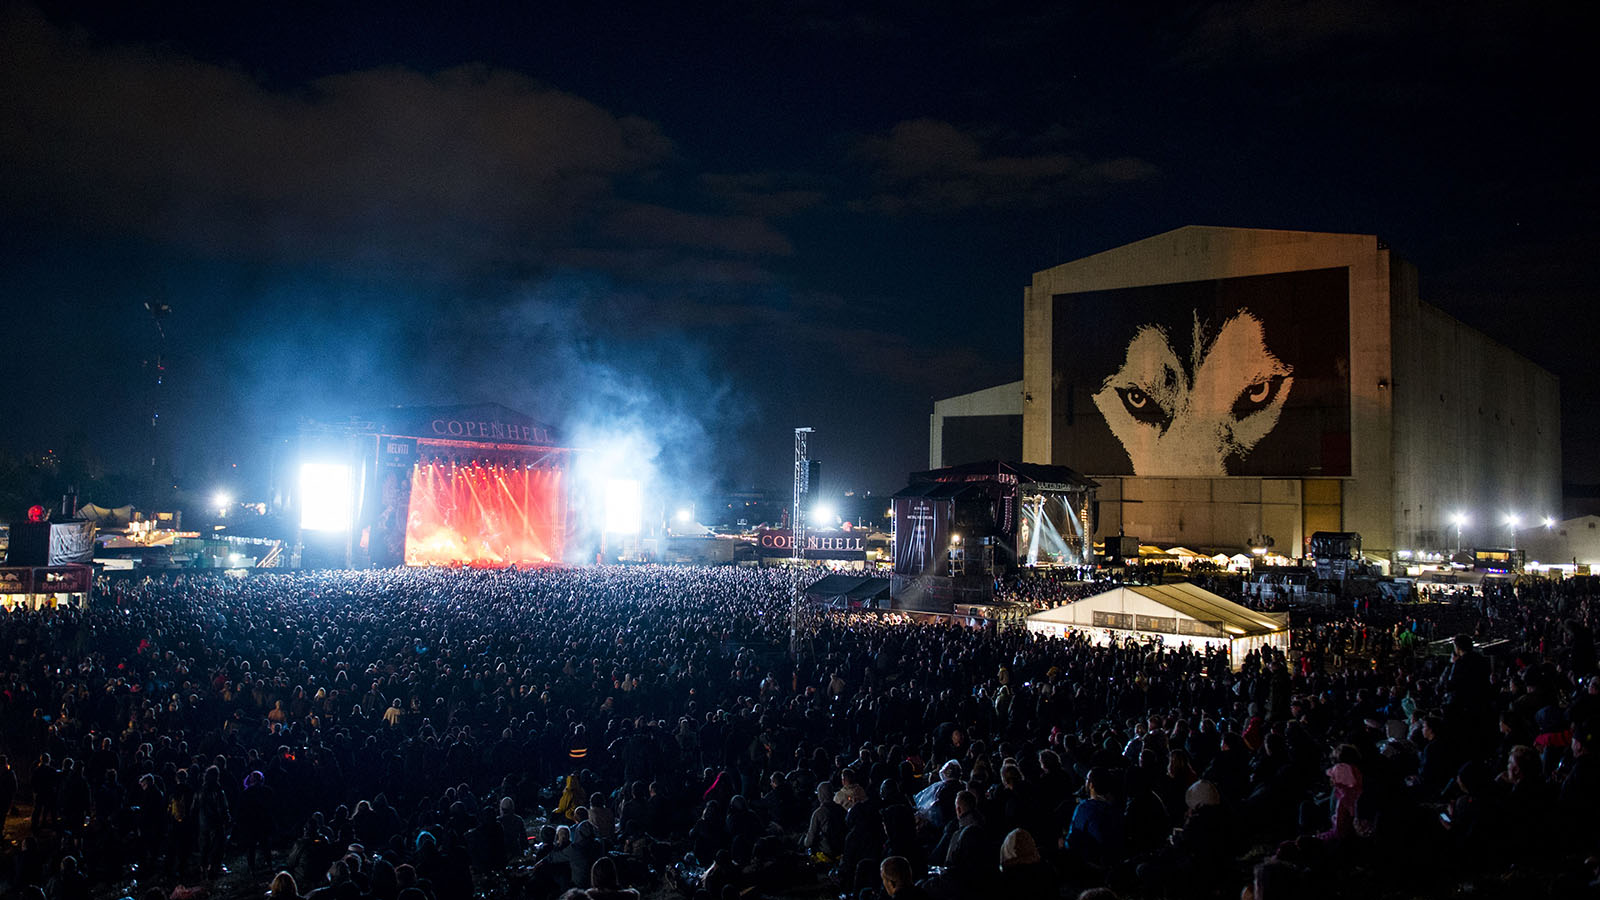 Billede ud over festivalpladsen, publikum og scene ved rockfestivalen Copenhell